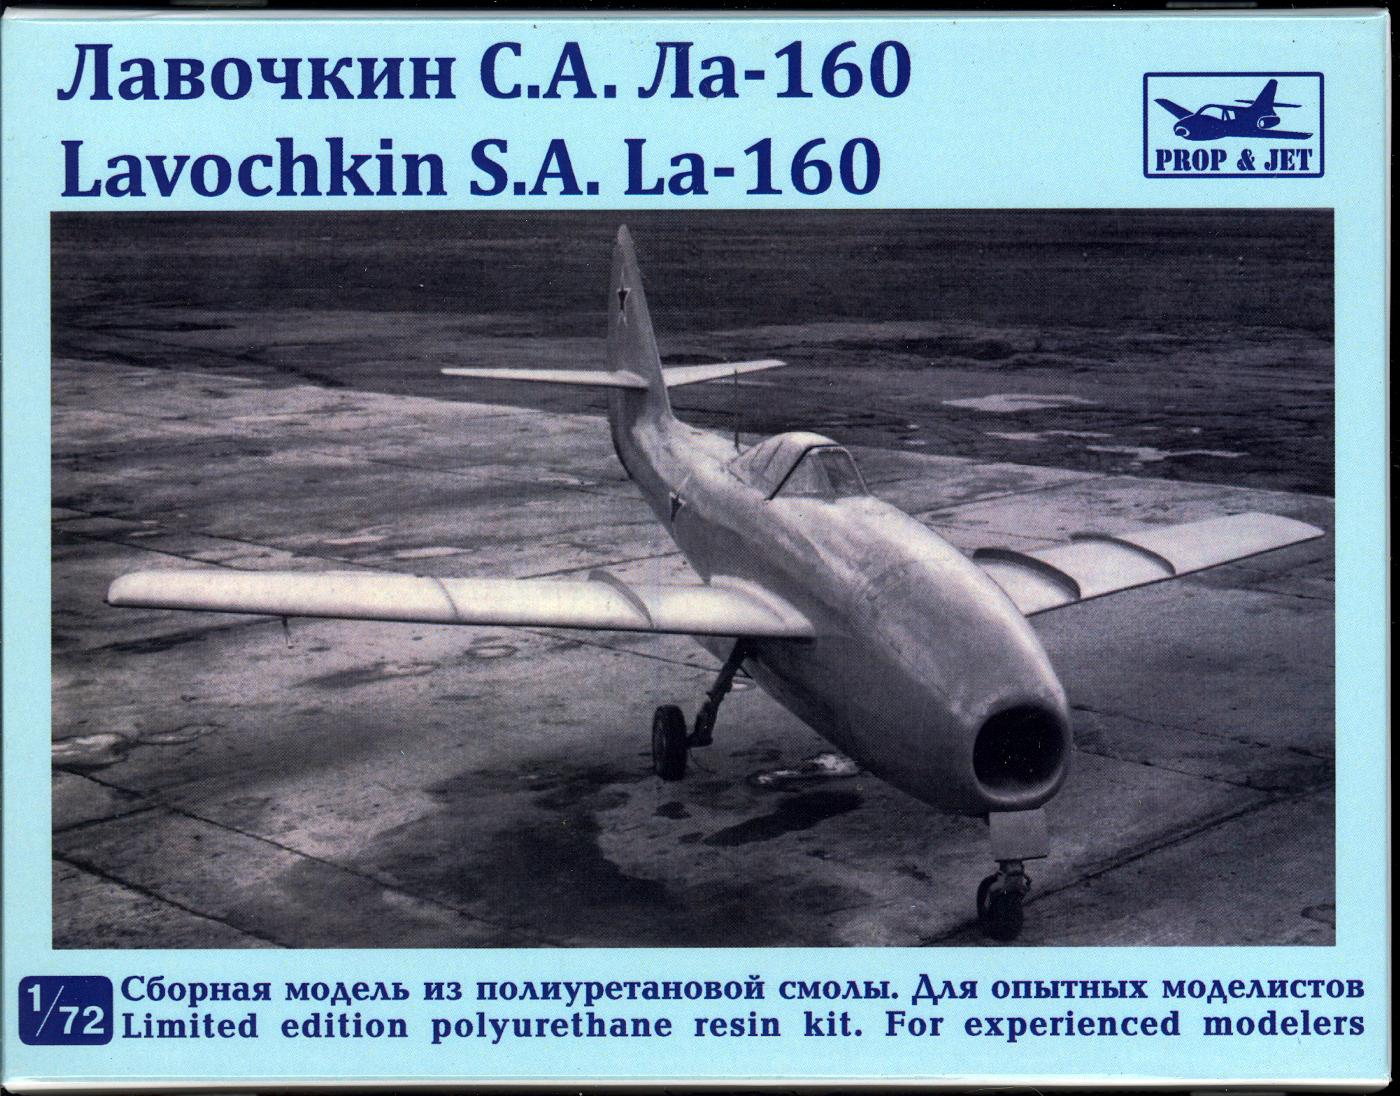 La-160 